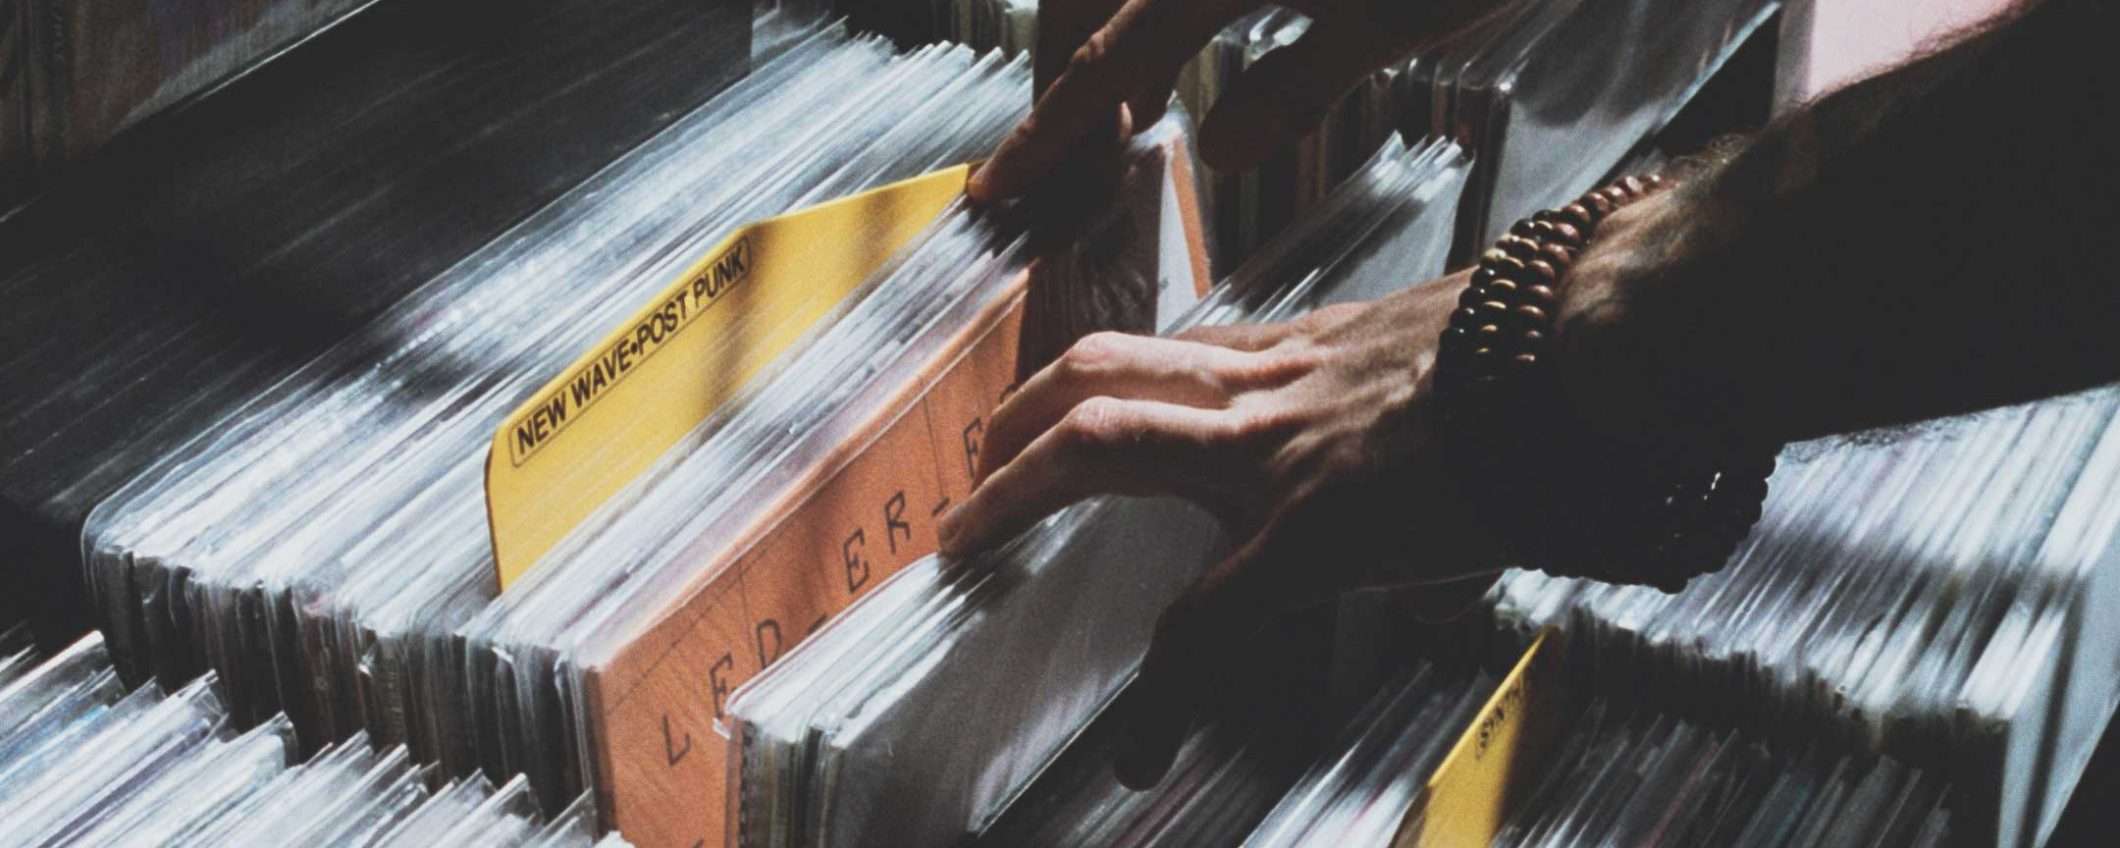 Record Store Day 2019: musica da toccare